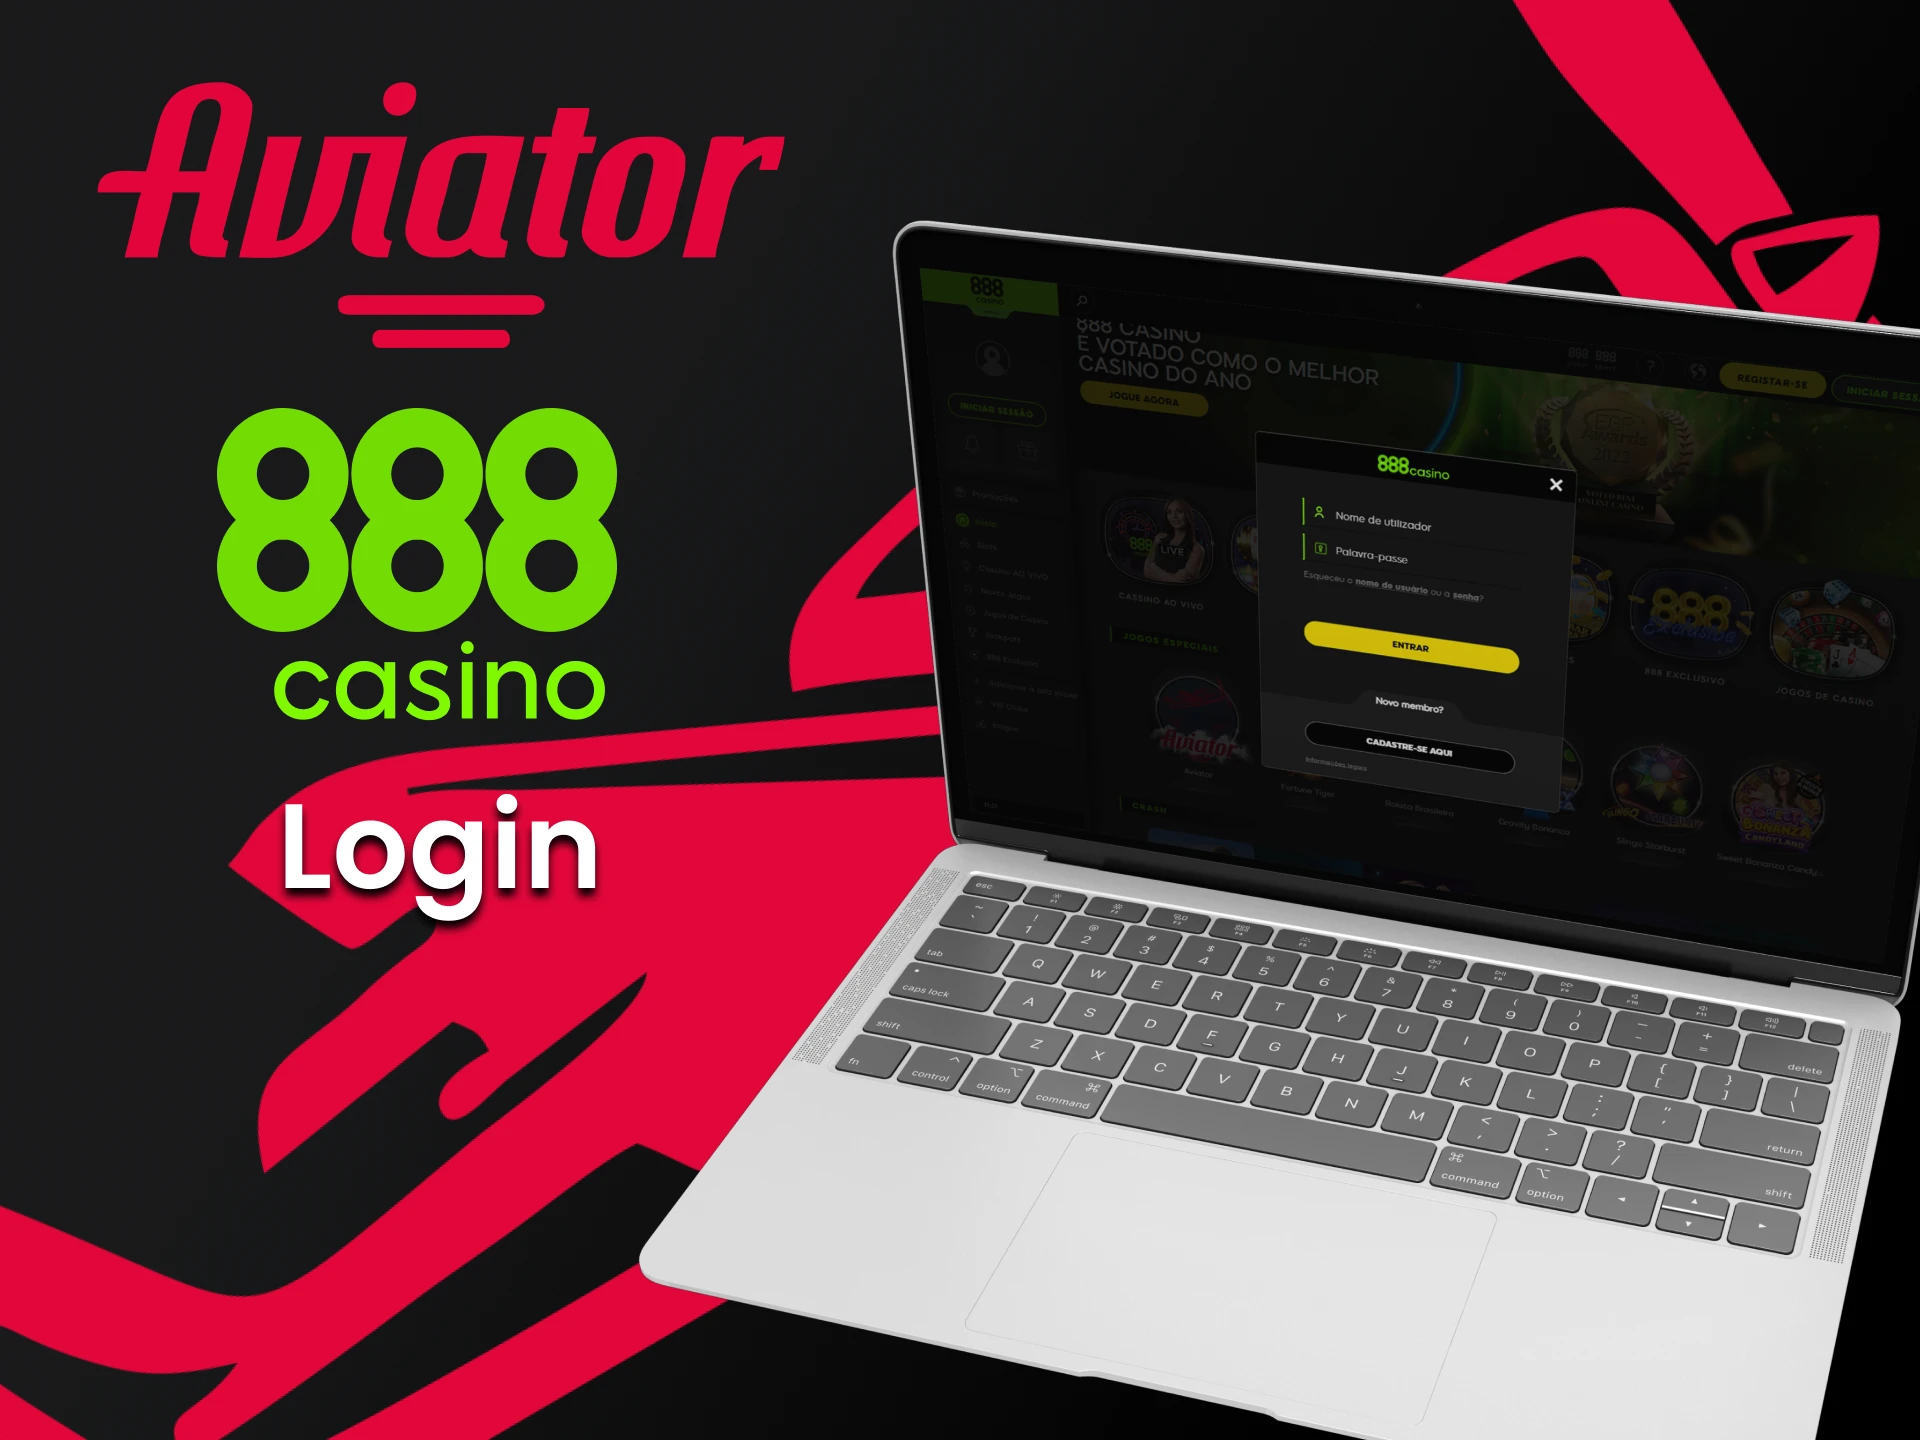 Se você tiver a conta no 888 casino, faça login para jogar Aviator.